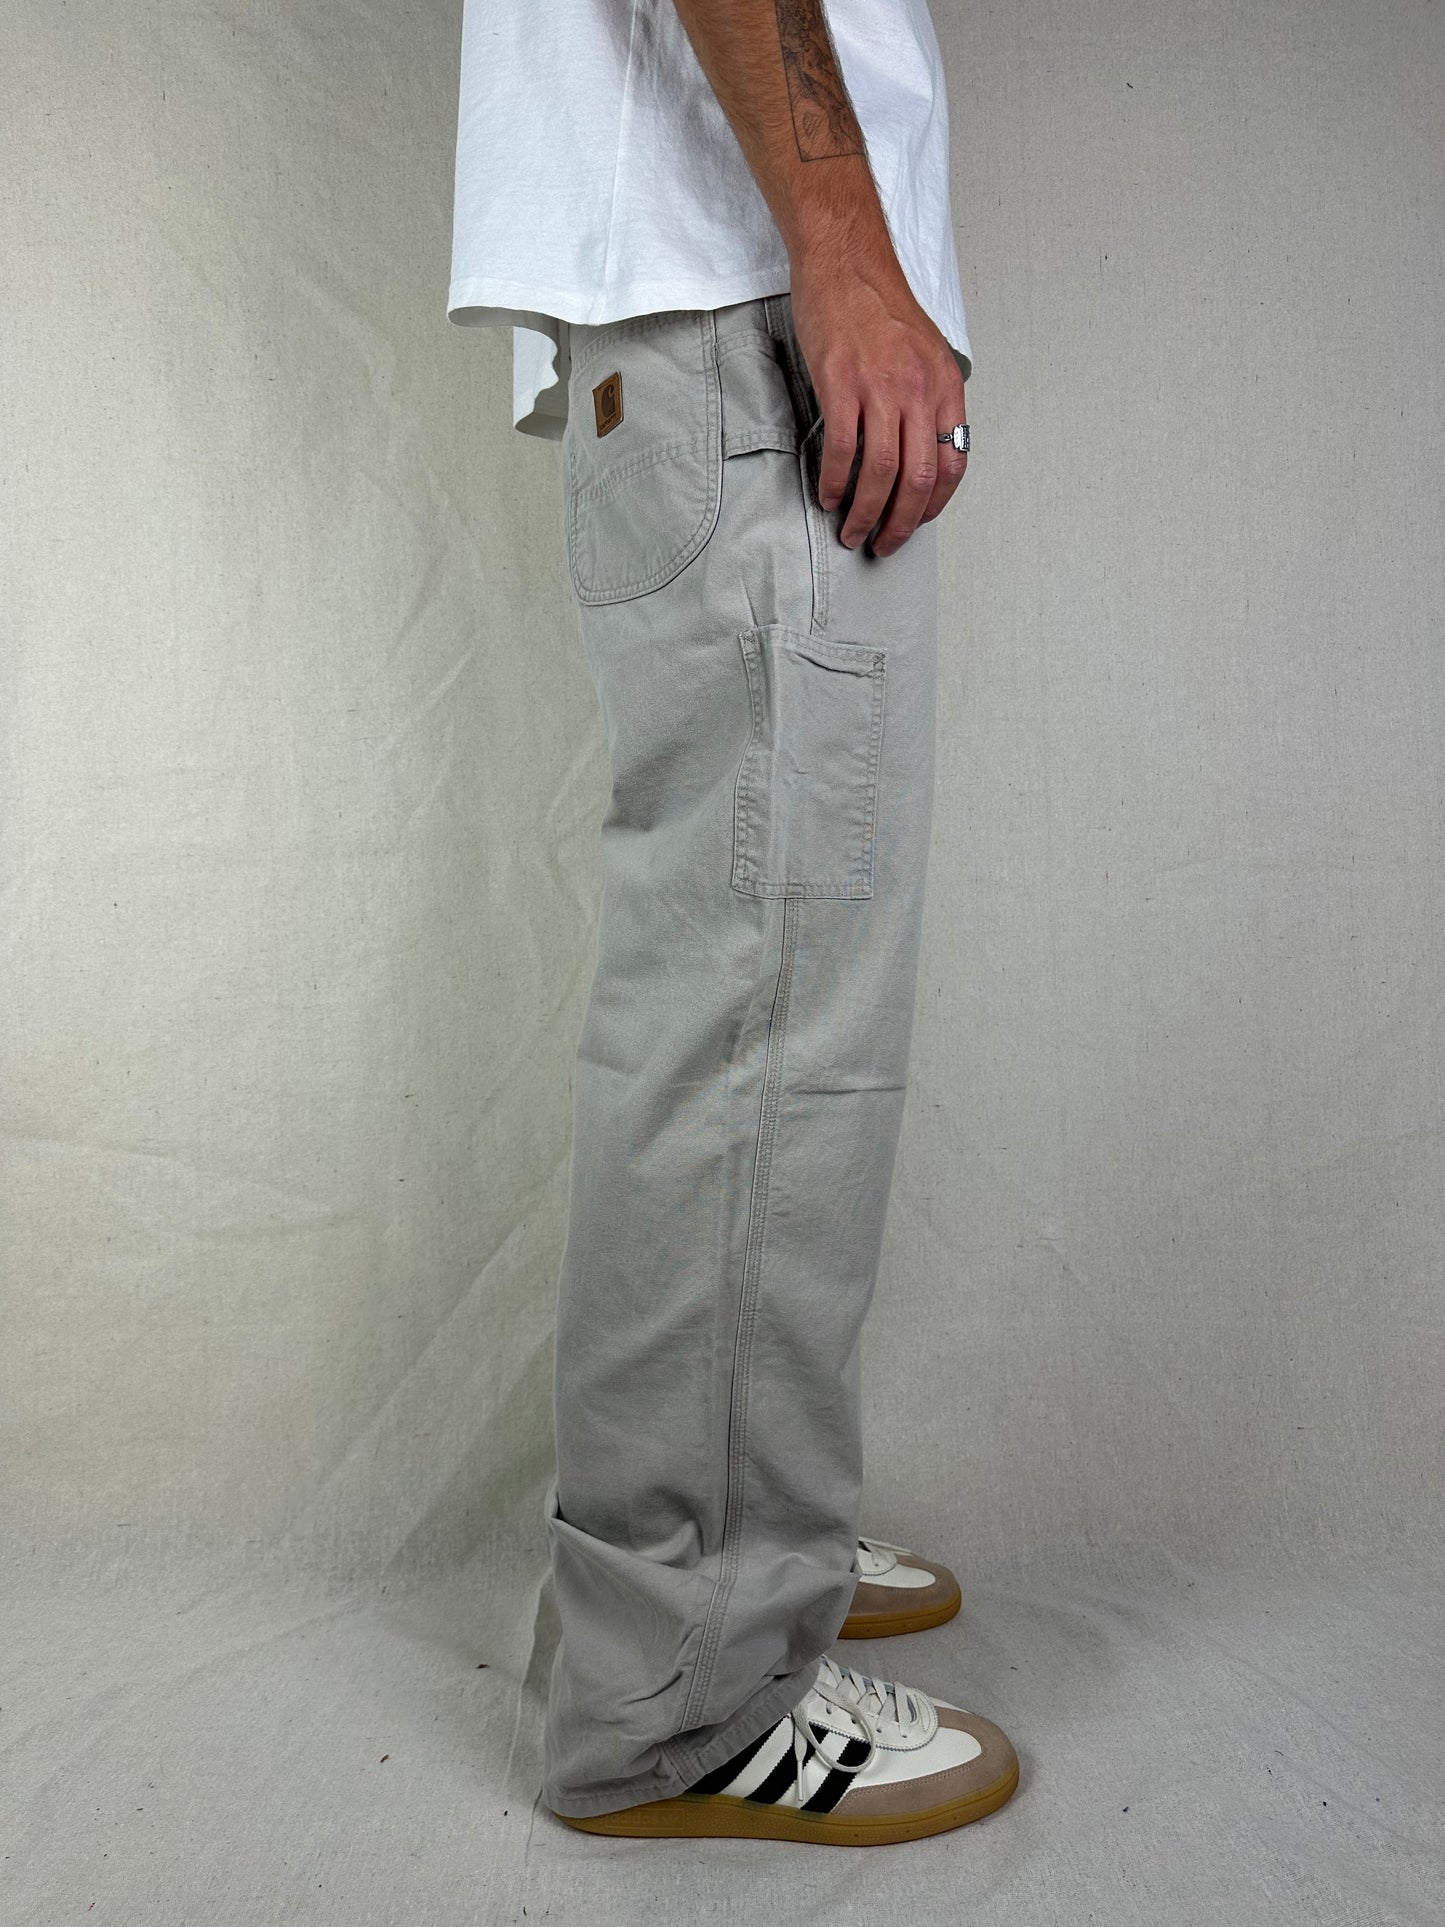 90's Carhartt Vintage Carpenter Pants Size 32x32